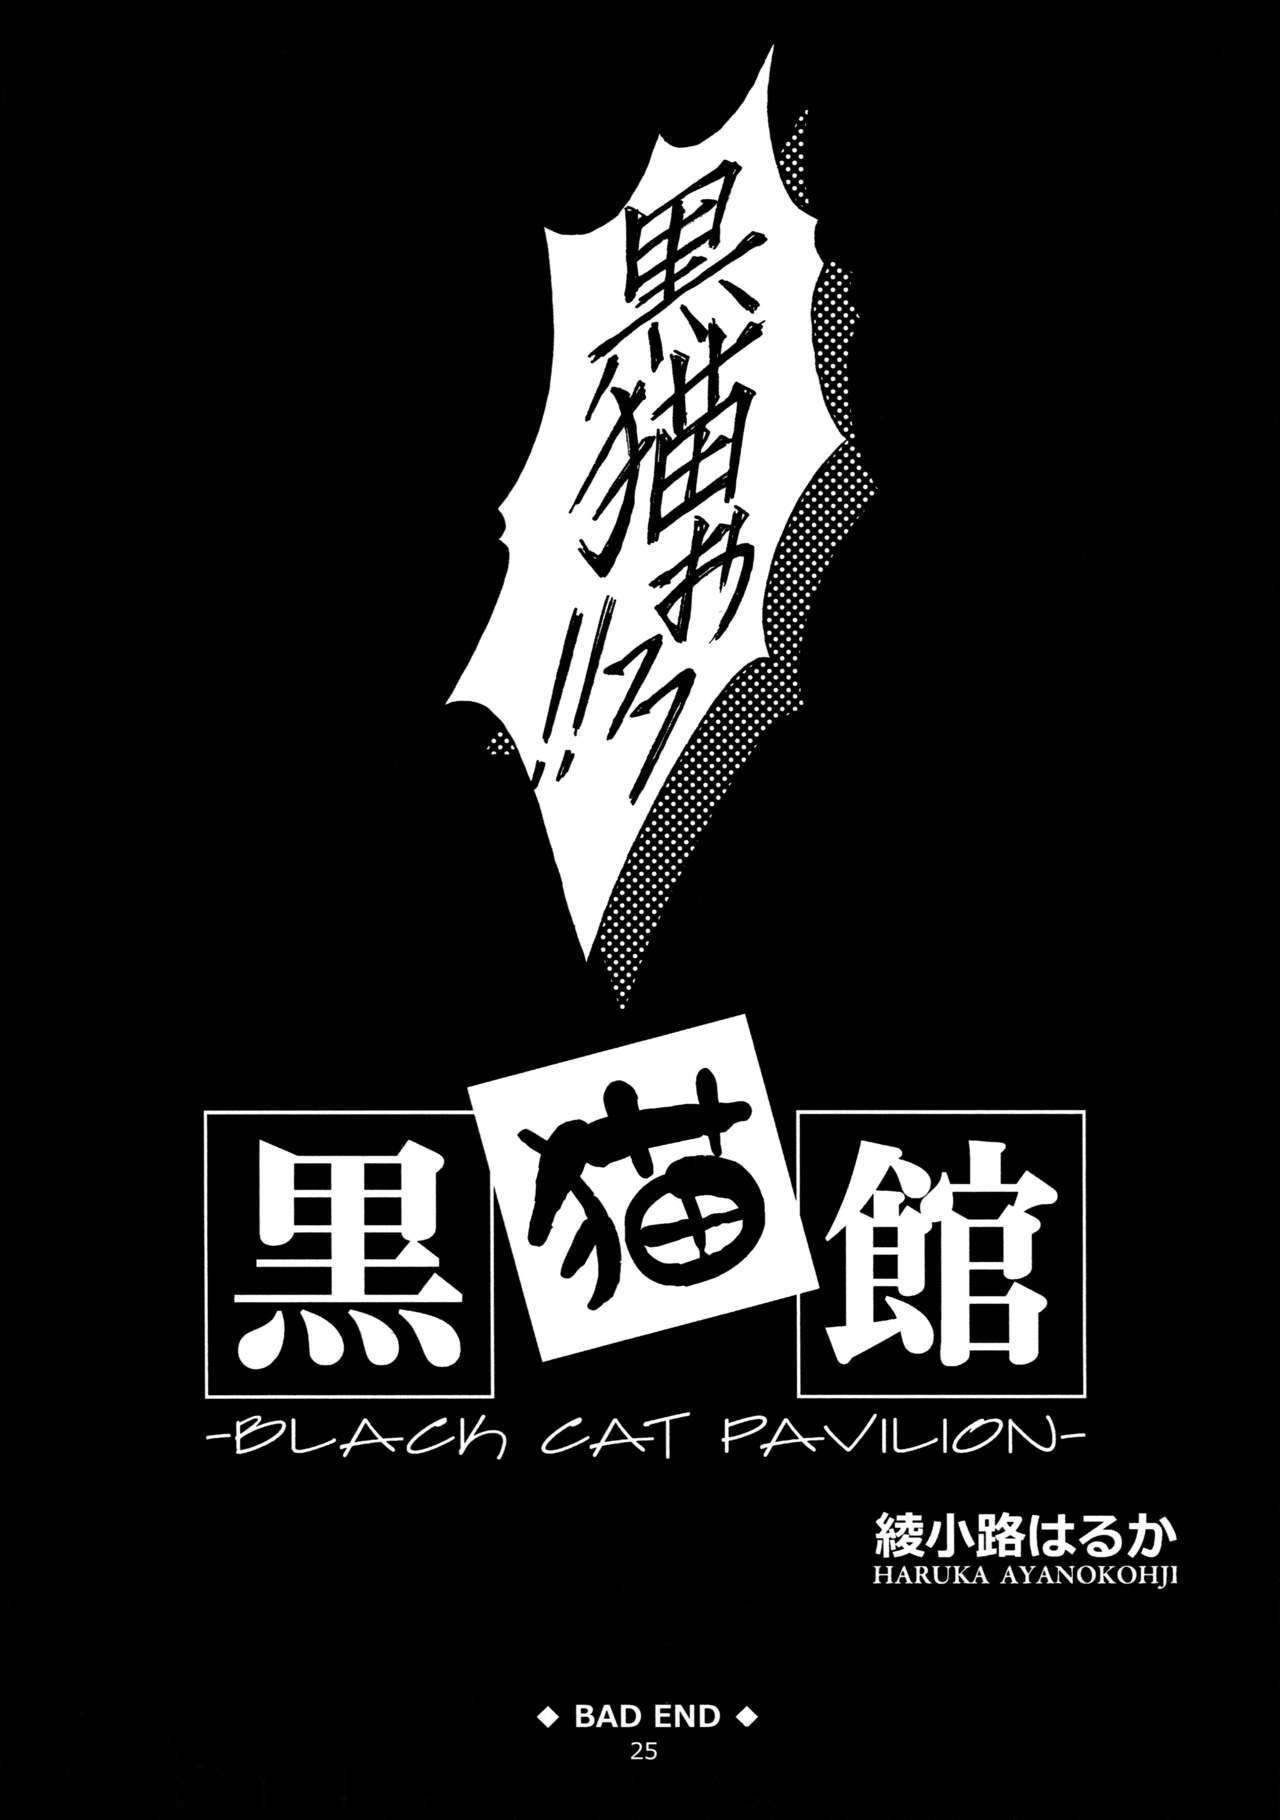 黒猫館-BLACKCAT PAVILION-